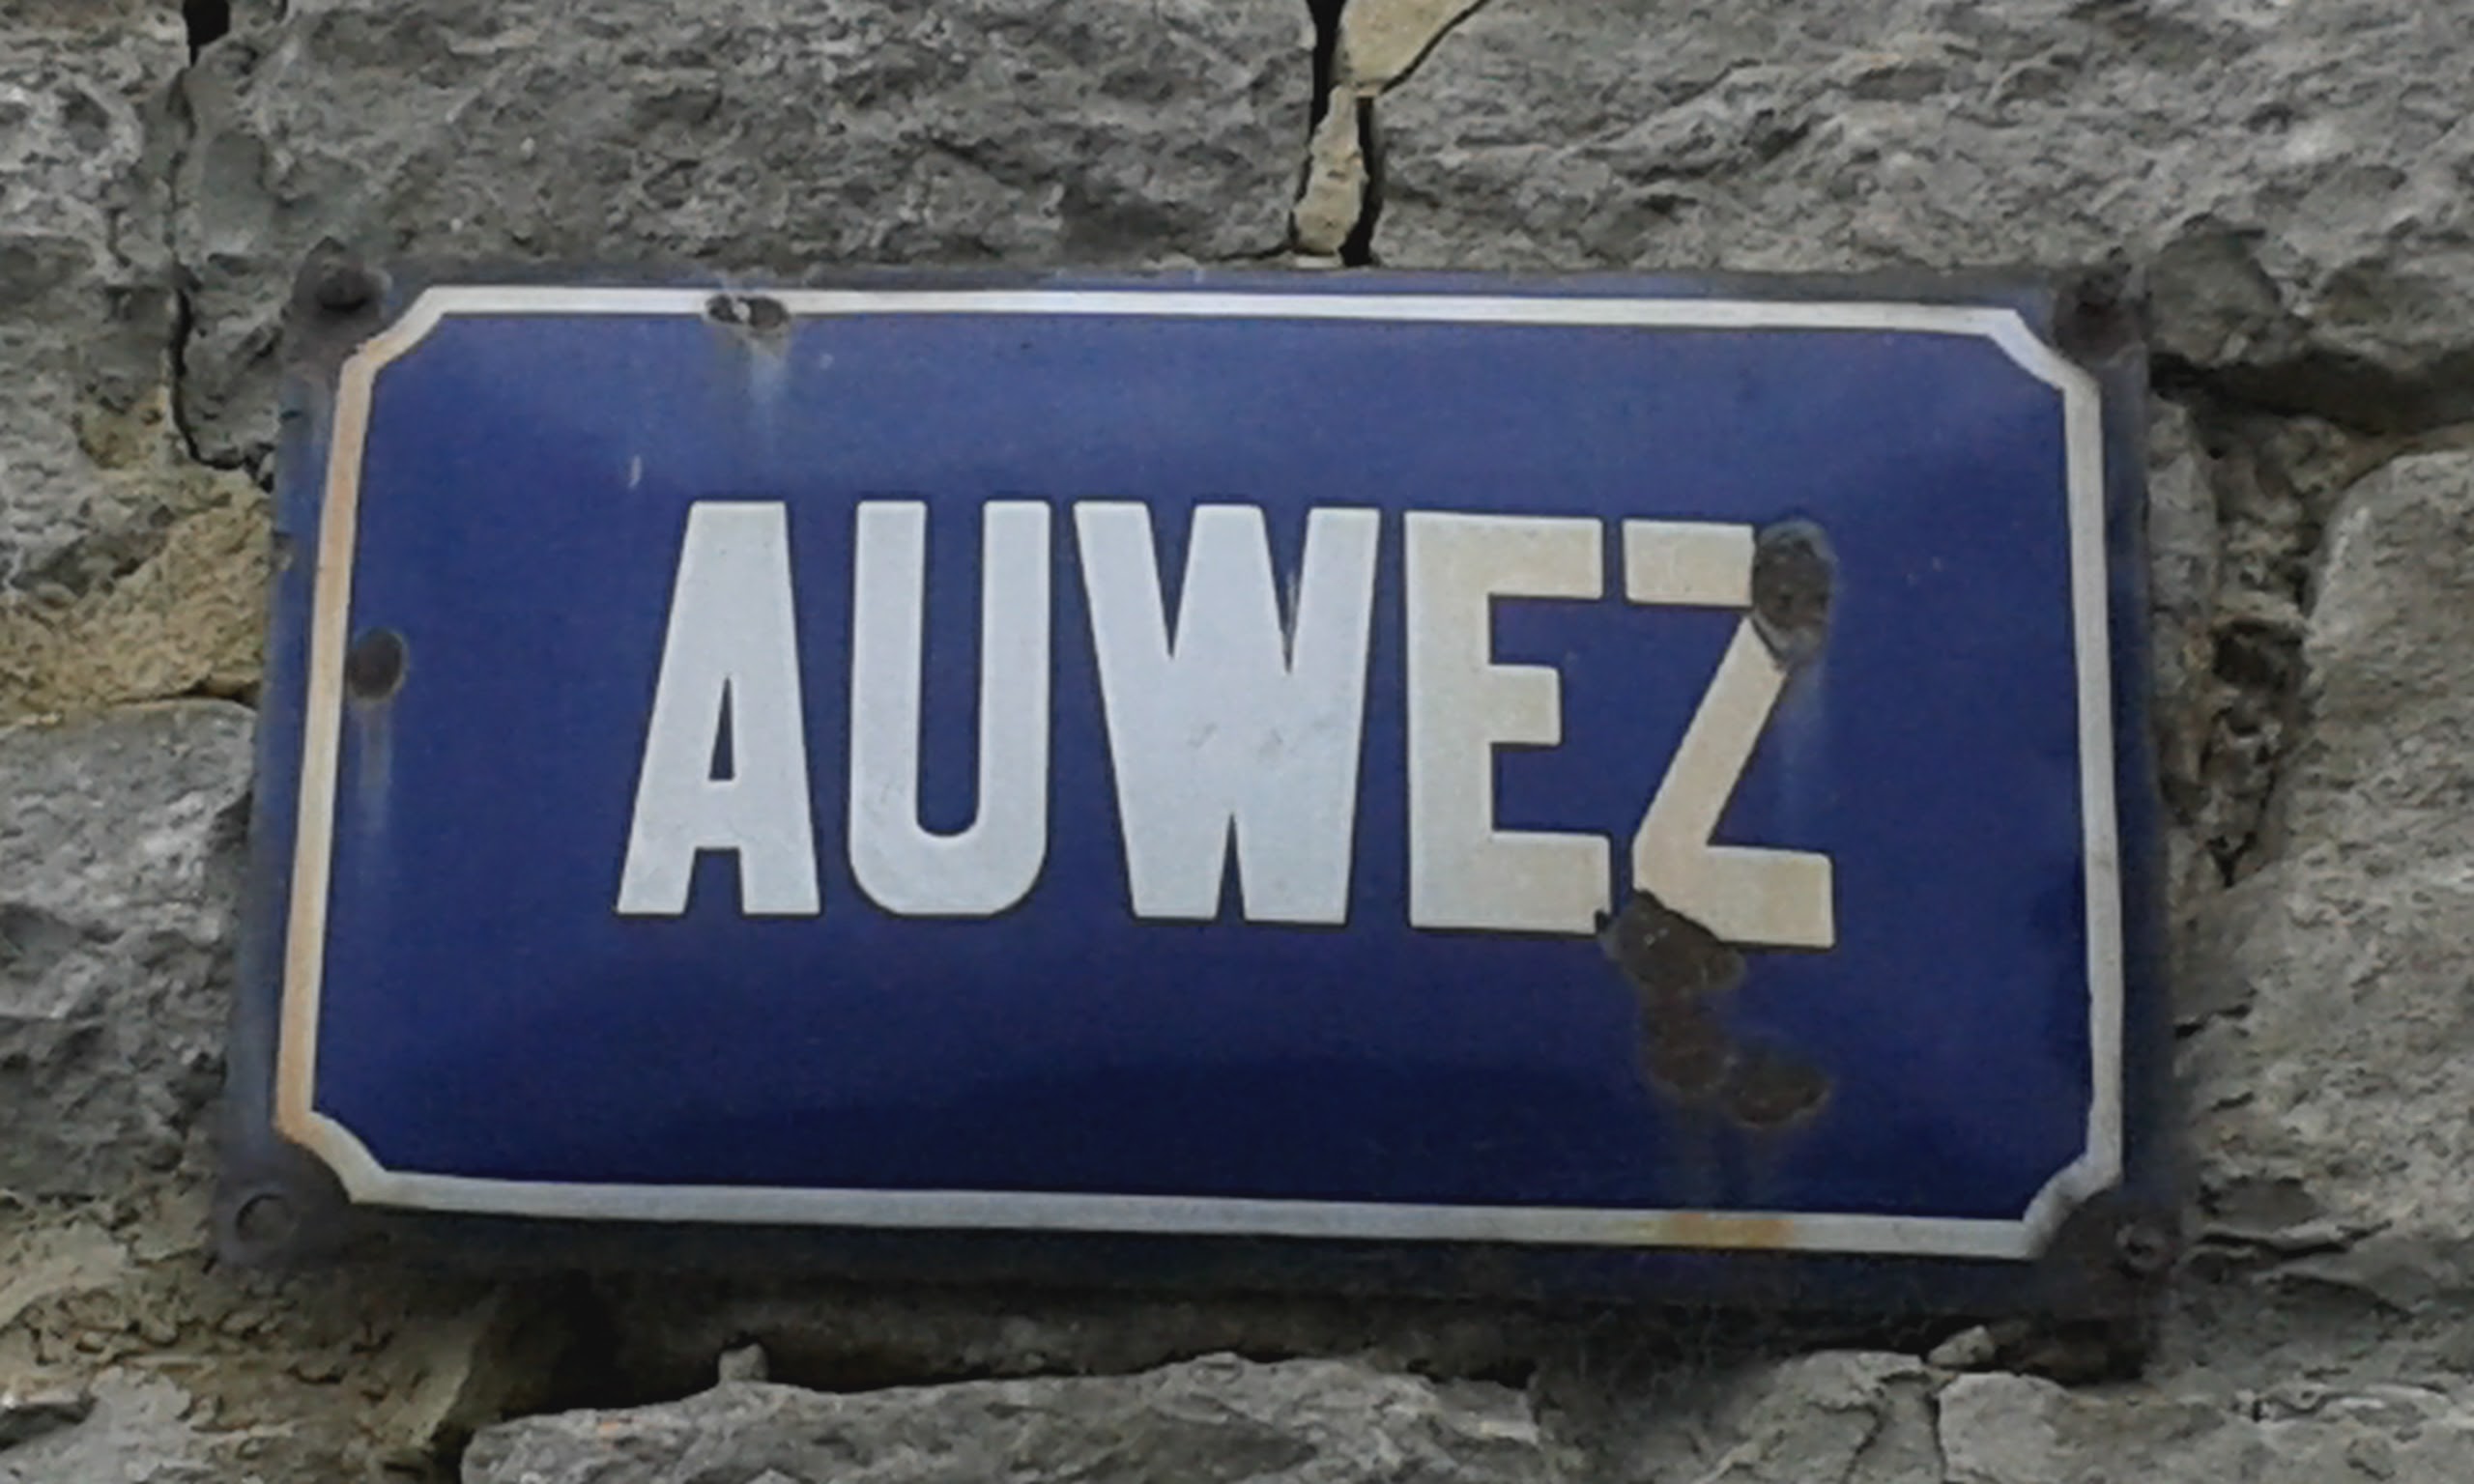 Plaque Auwez